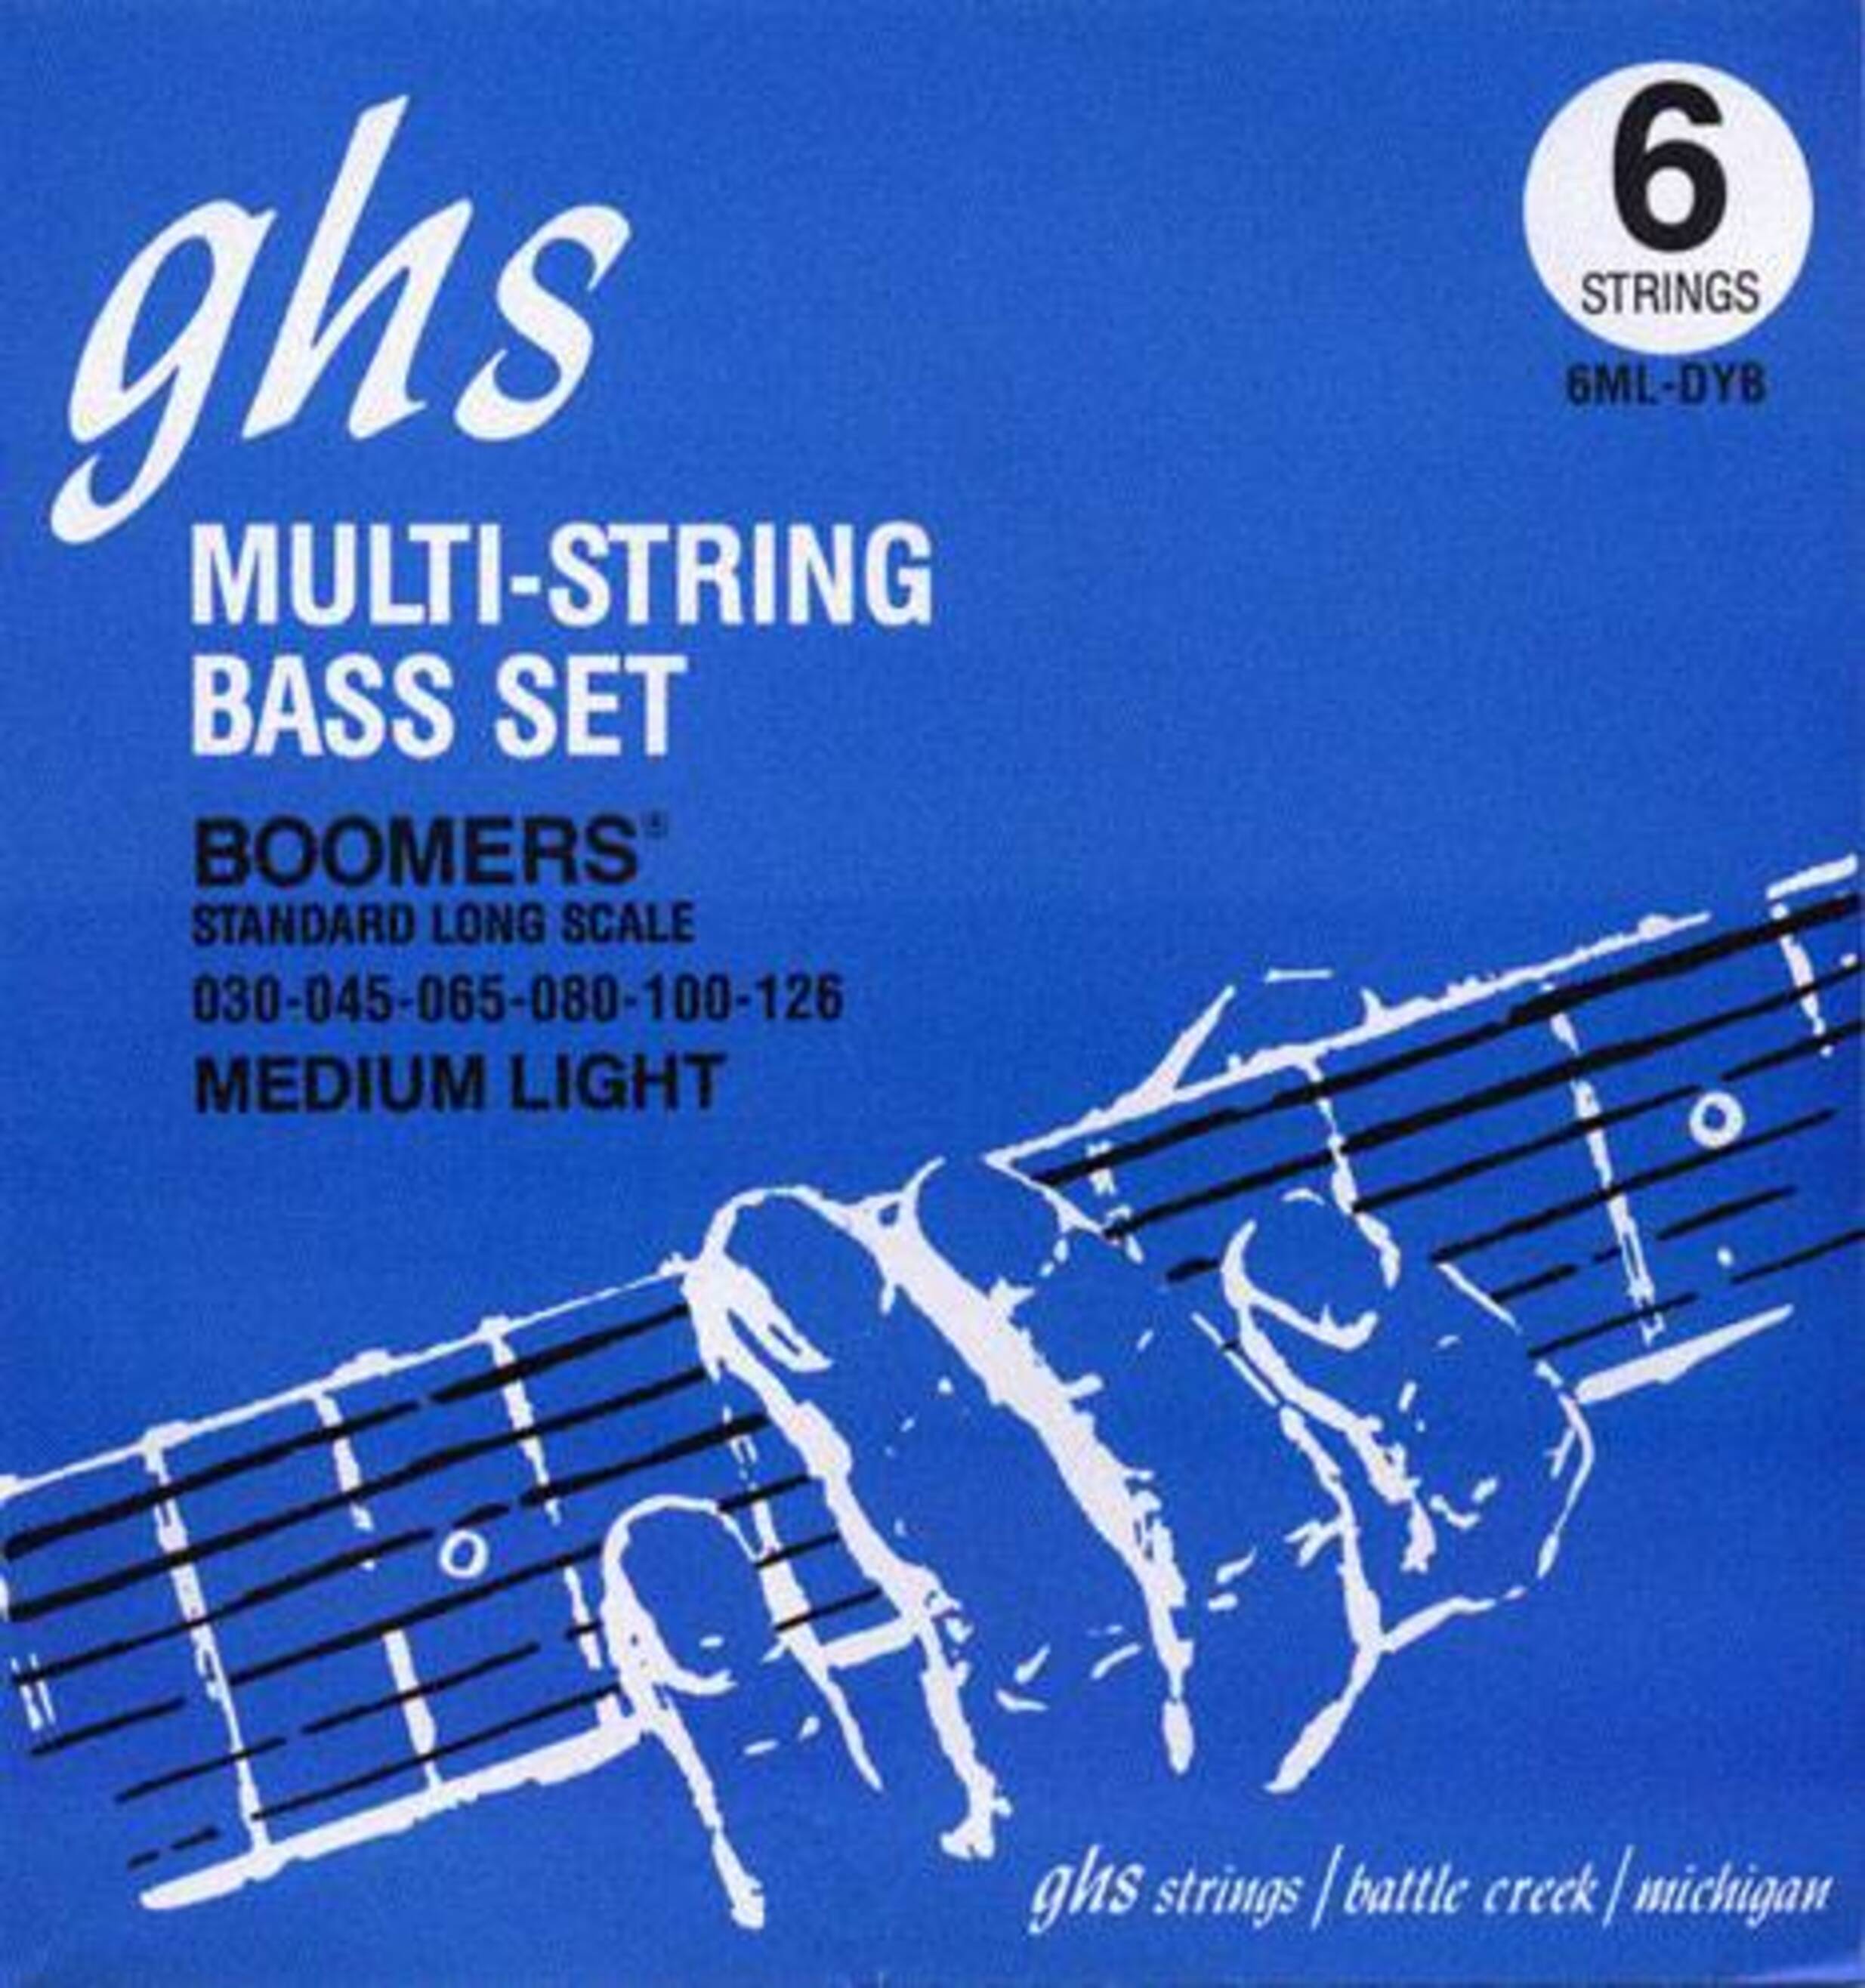 Струны GHS Strings 6ML-DYB струны ghs strings 5l cc